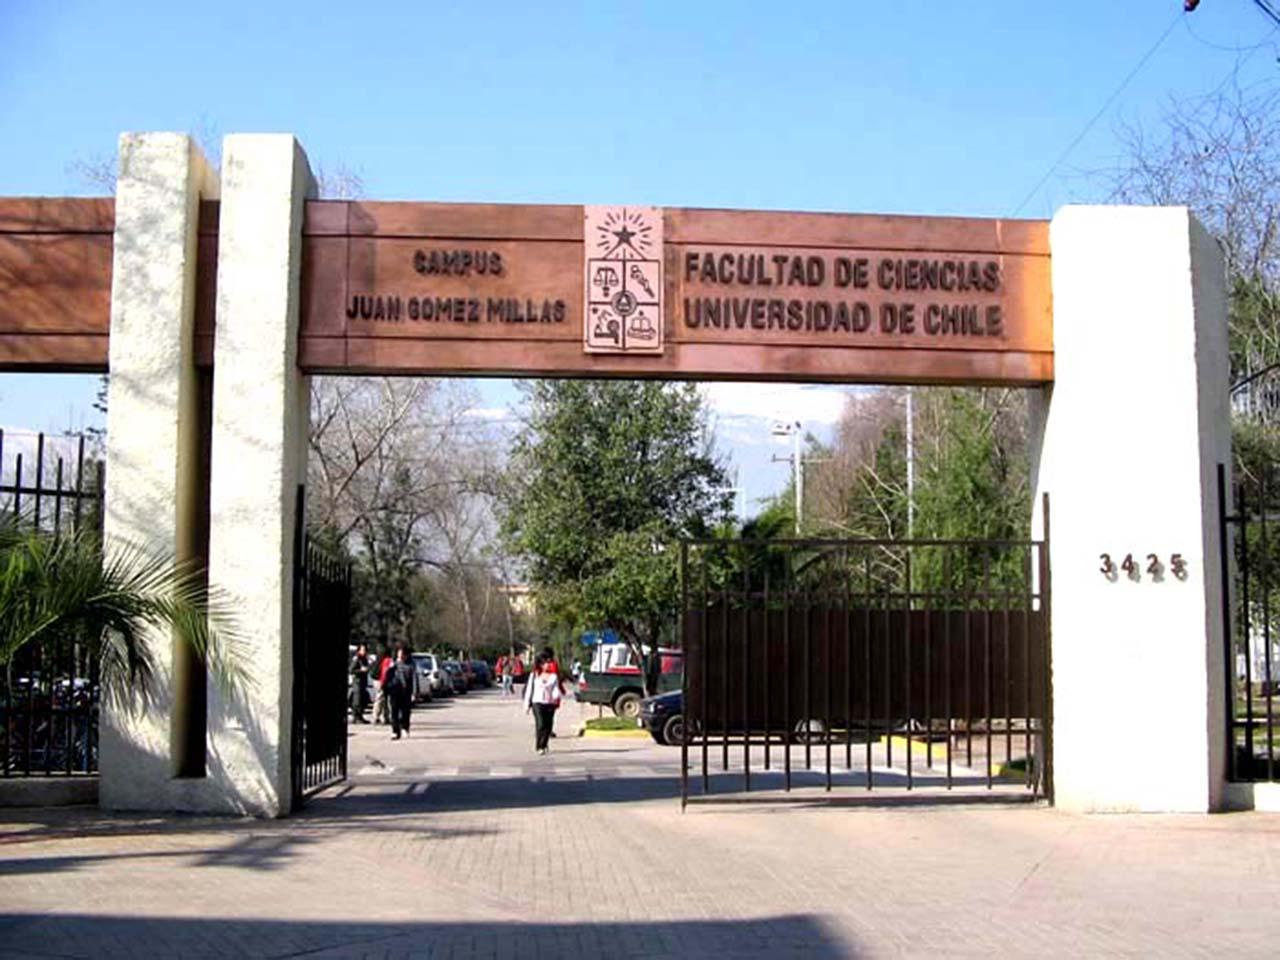 Facultad de Ciencias desde 1965 formando científicos para Chile